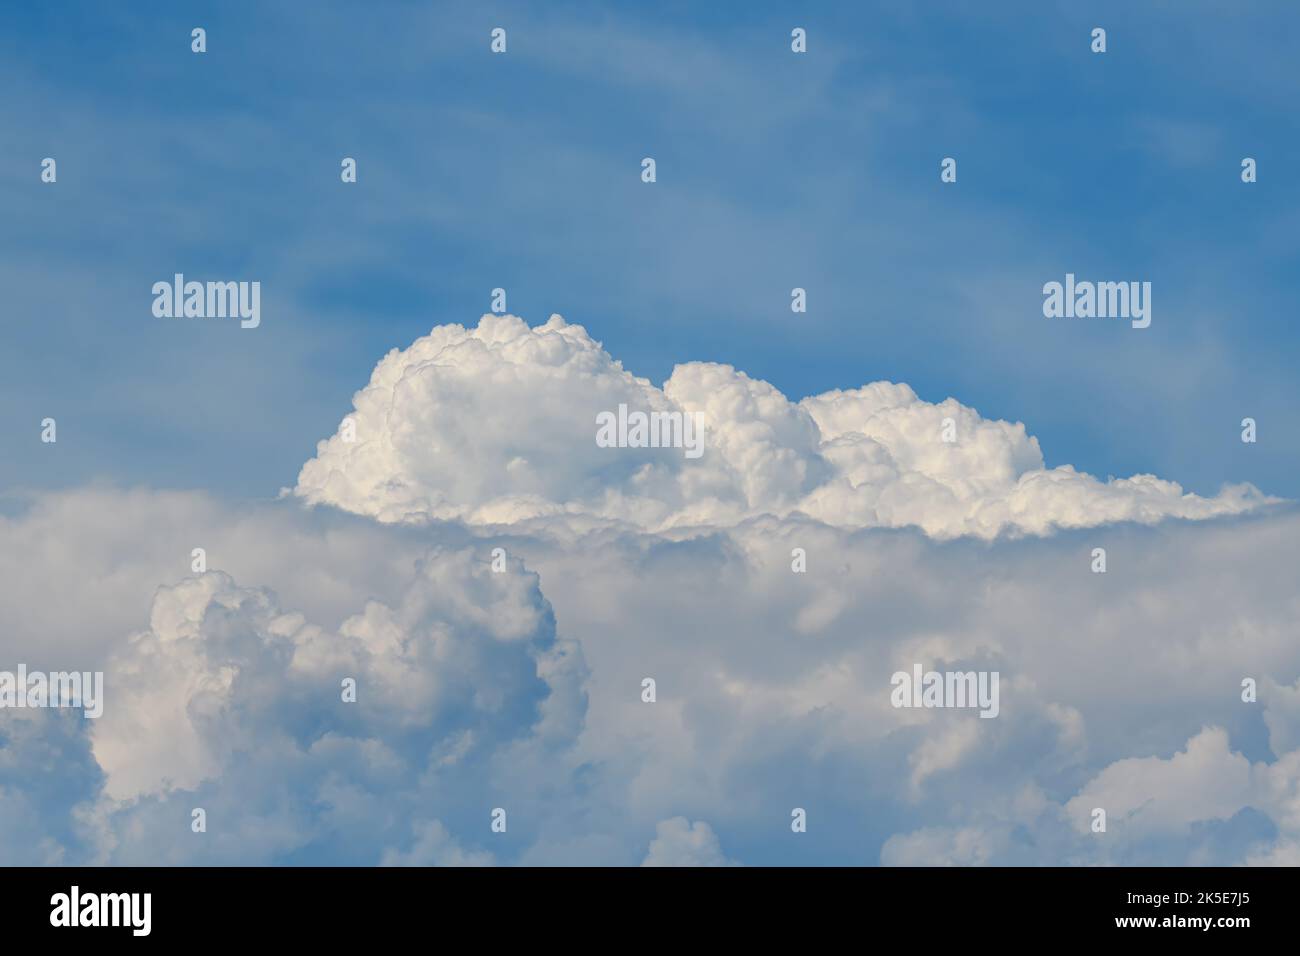 Un grand nuage blanc moelleux sous un ciel bleu lors d'une journée ensoleillée. Banque D'Images